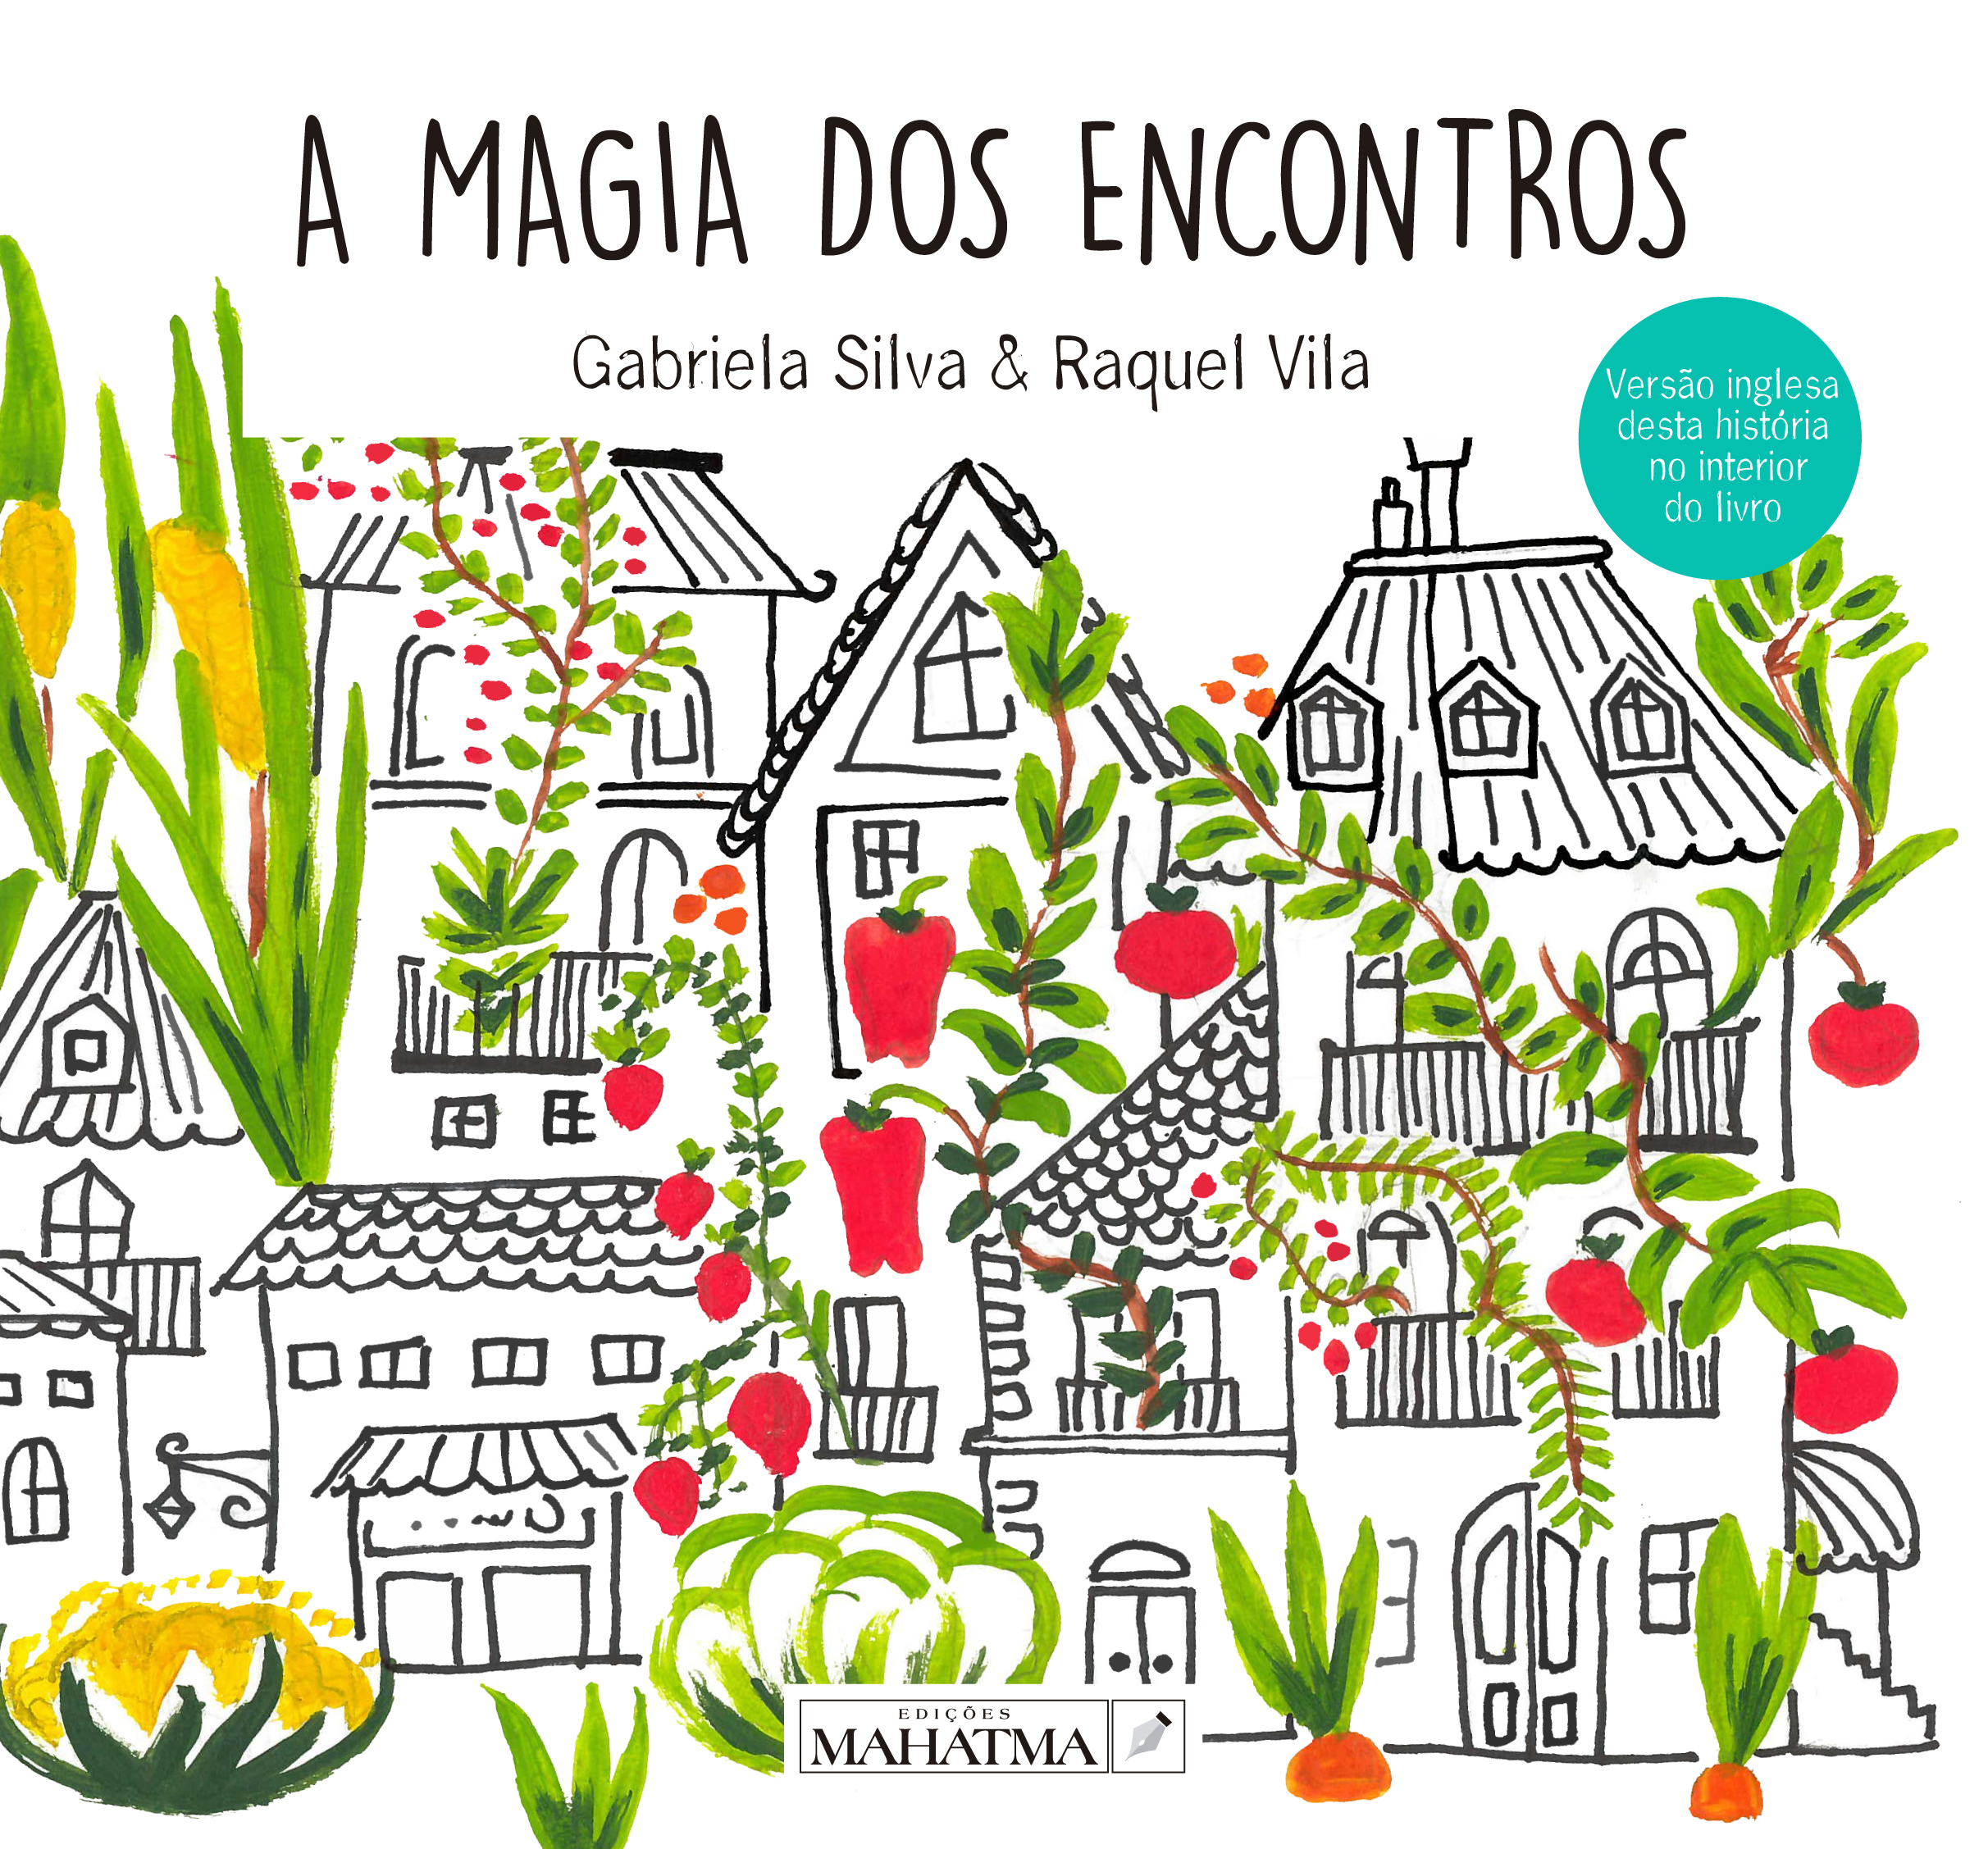 A Magia dos Encontros gabriela silva açores ilha das flores livro infantil edições mahatma online